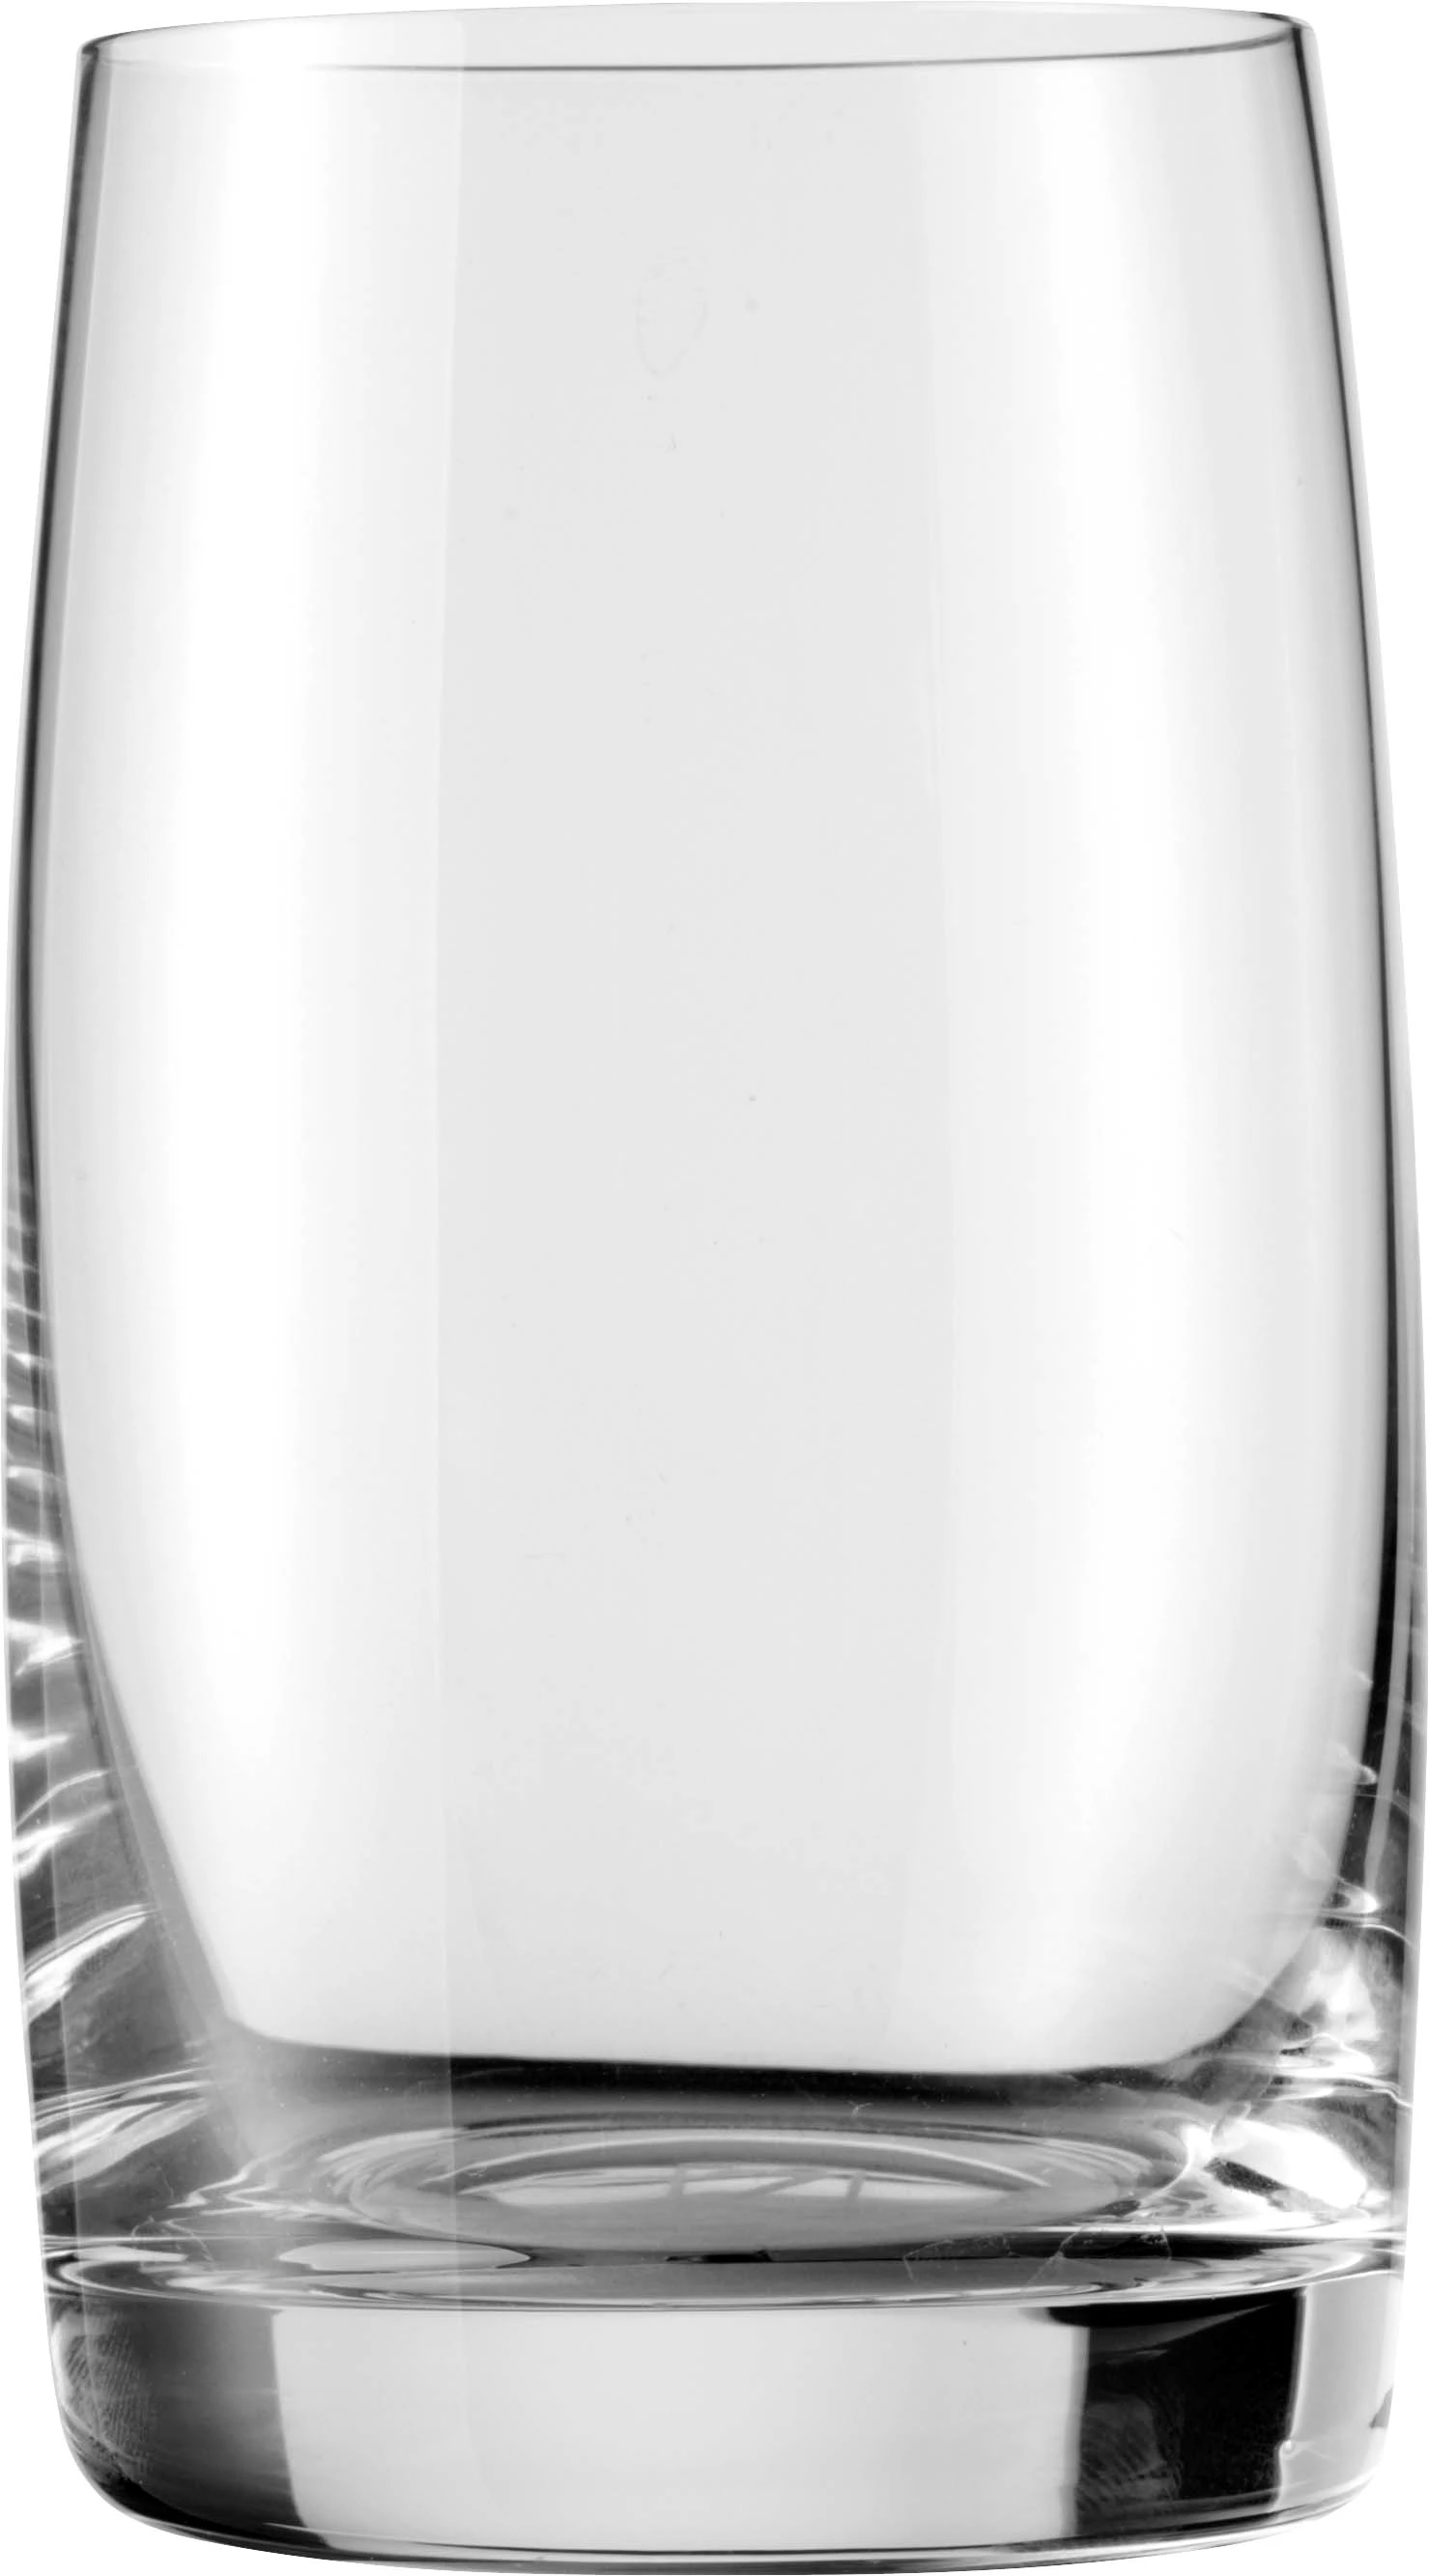 Zenz Penelope vandglas, 29 cl, H11,5 cm